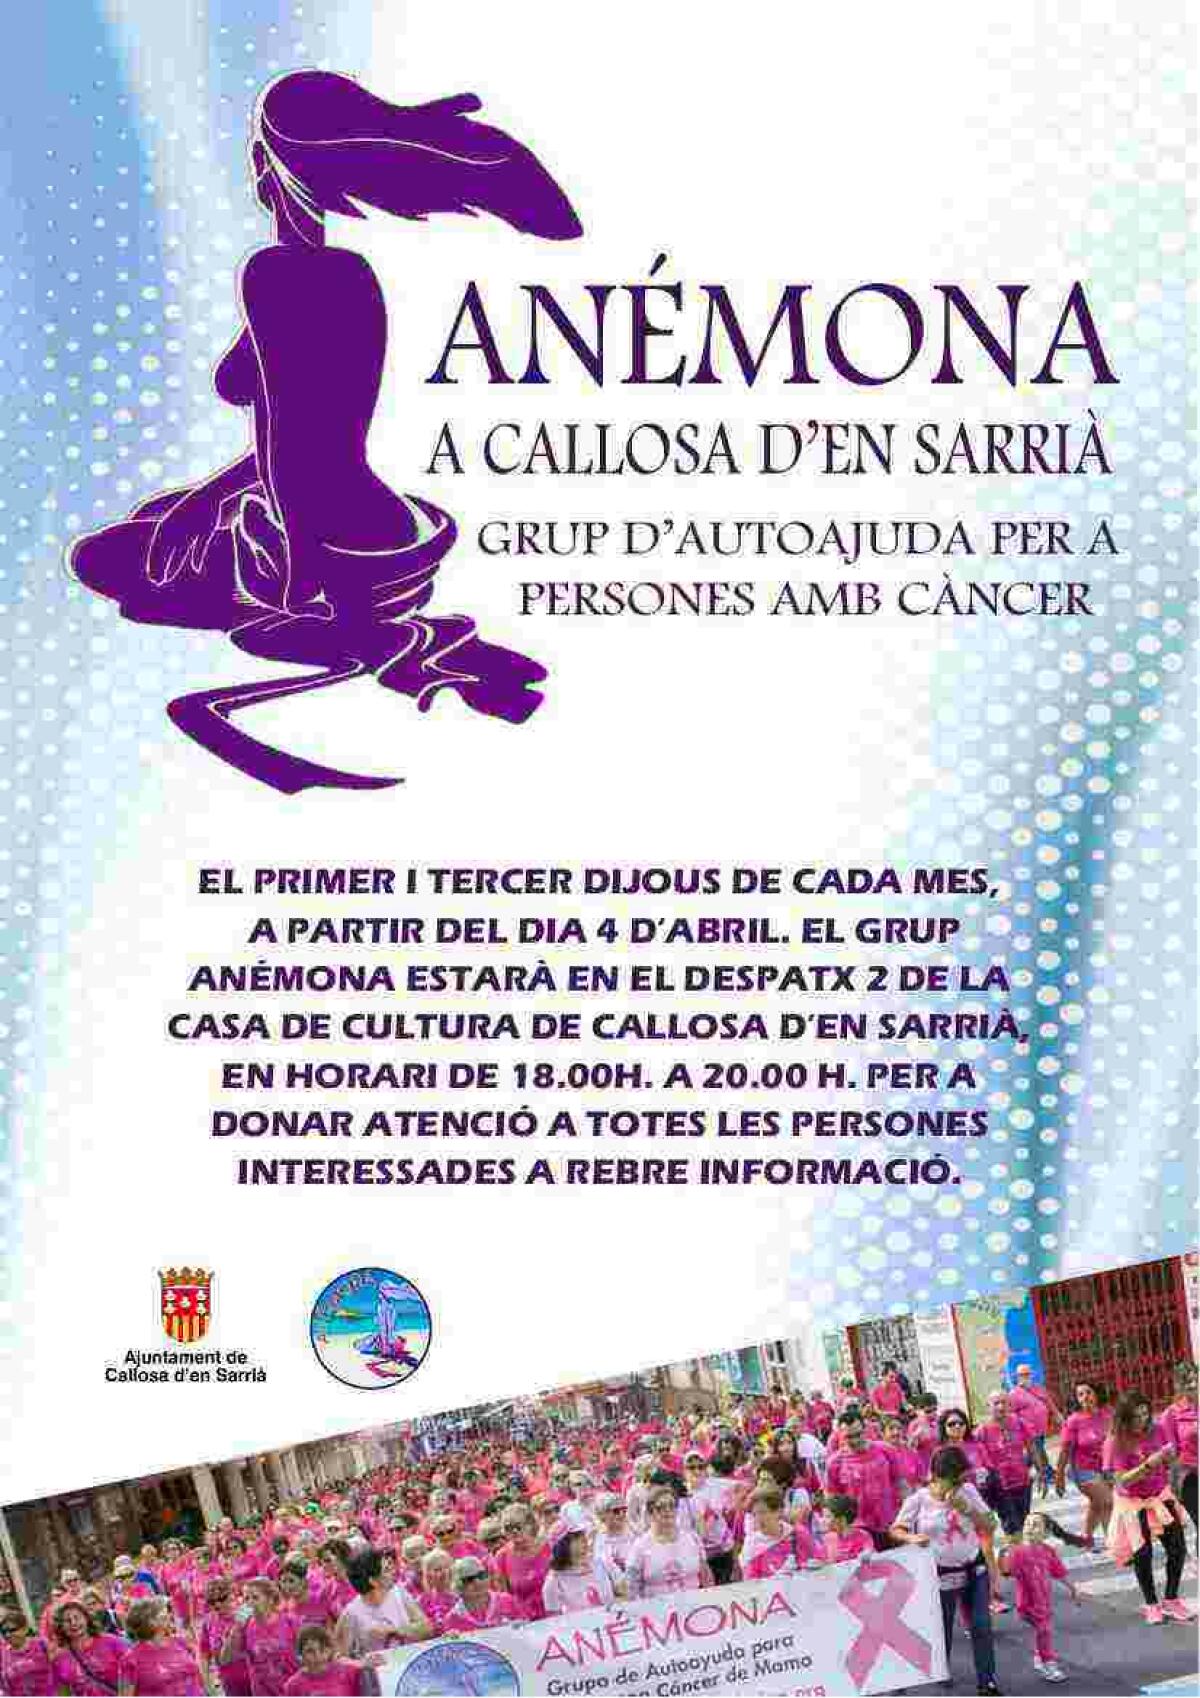 Anémona ofrece esta tarde su servicio de atención en la Casa de Cultura de Callosa d’en Sarrià